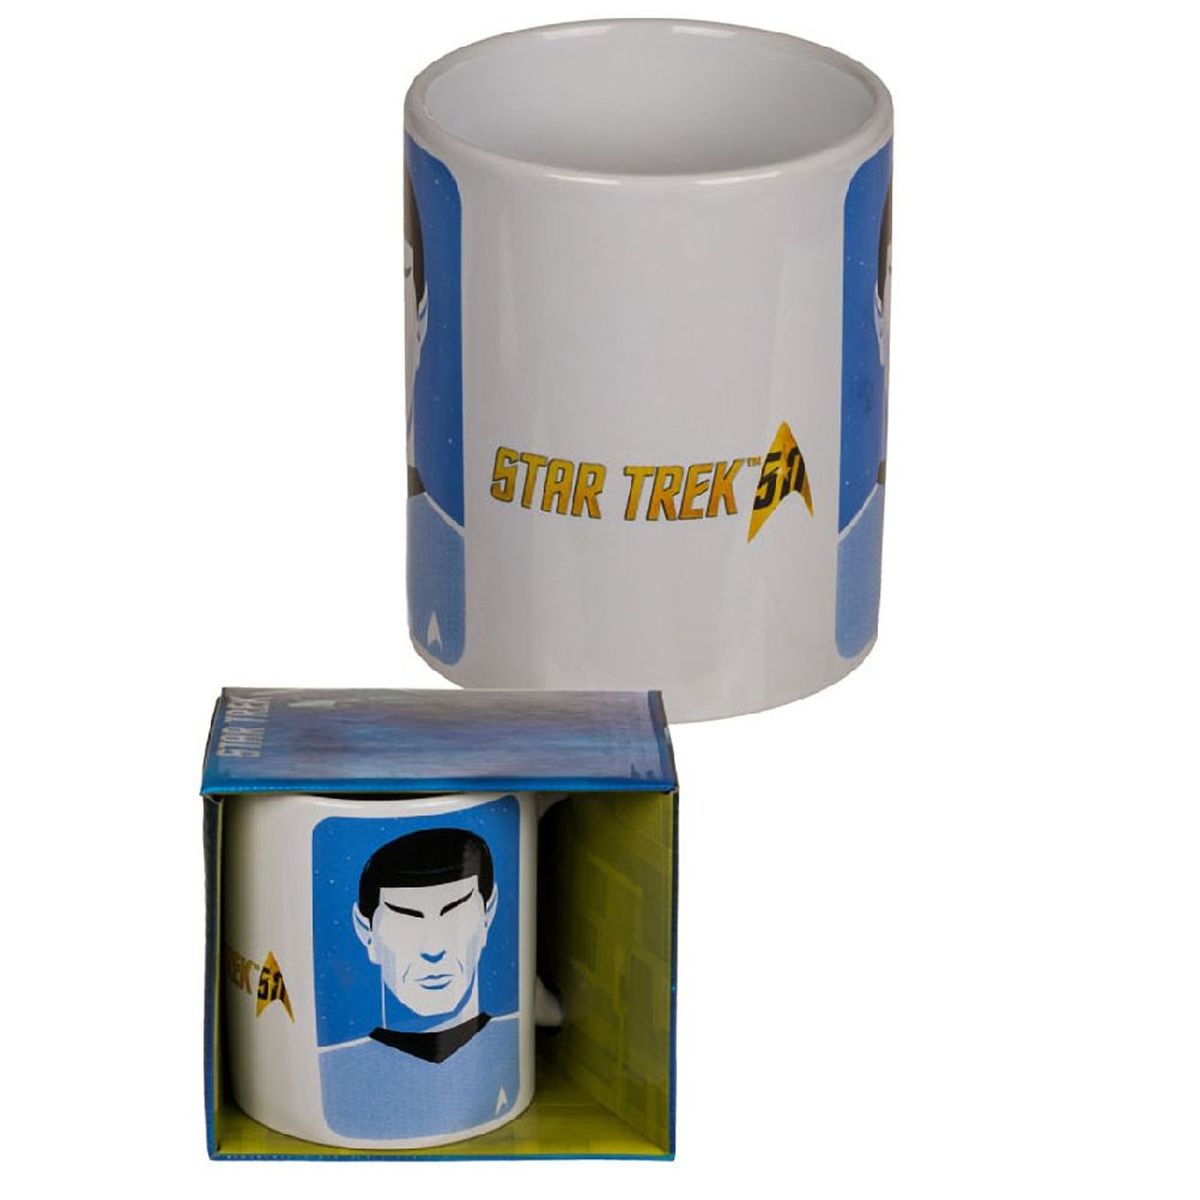 Star Trek mug